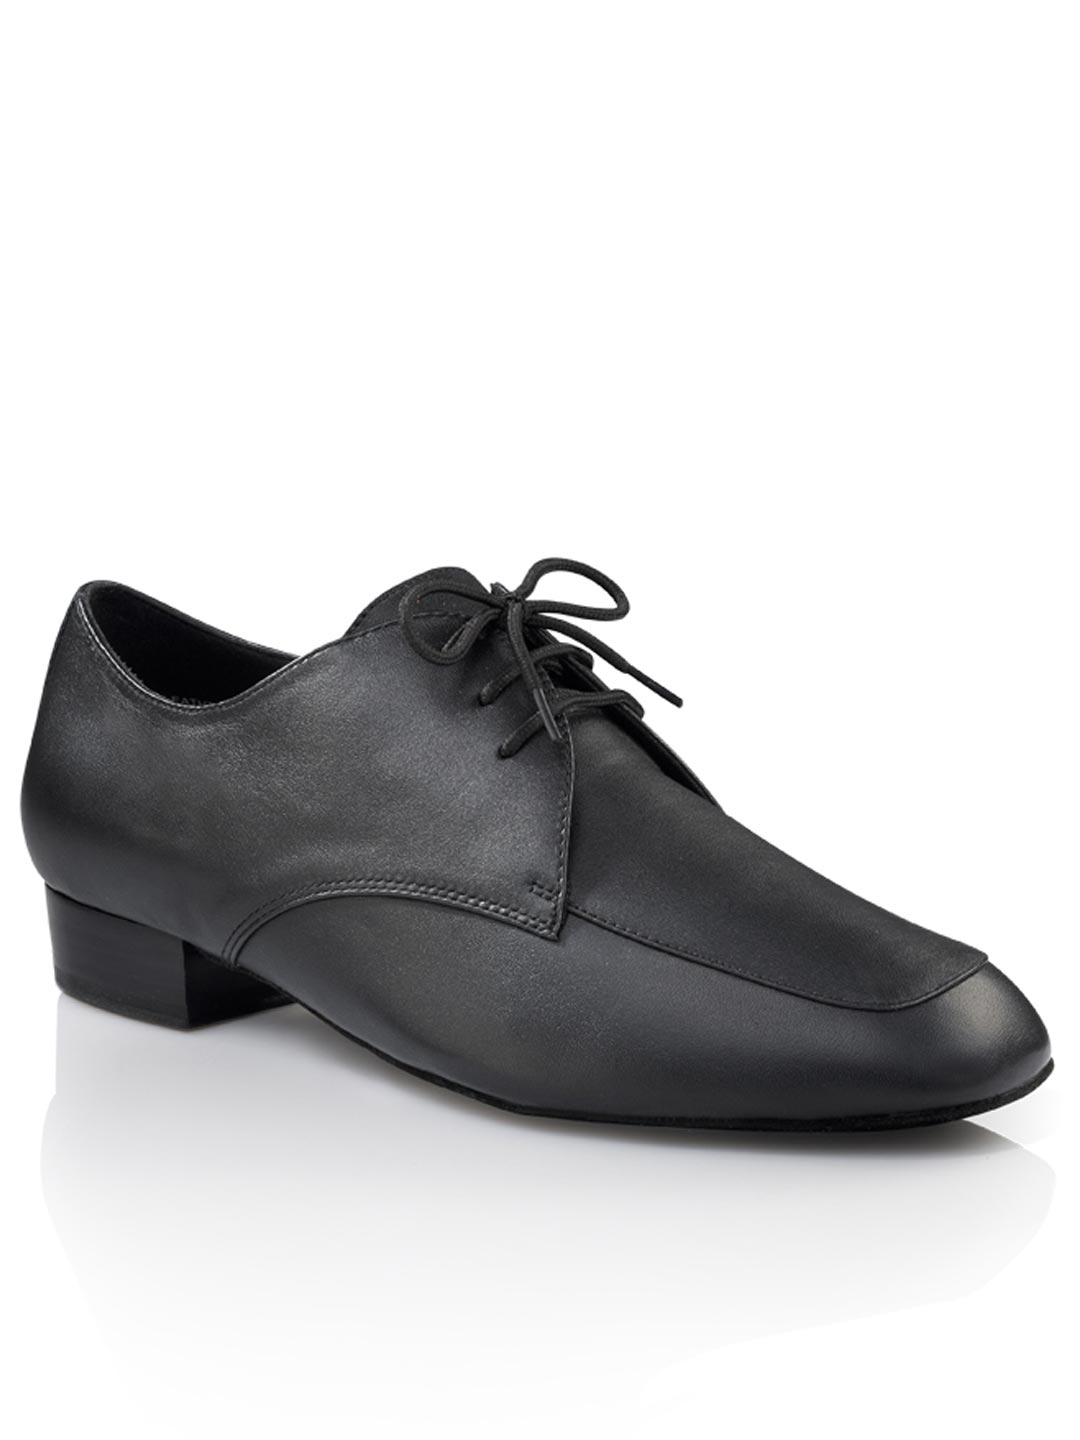 Men's Ballroom Shoe - Ben